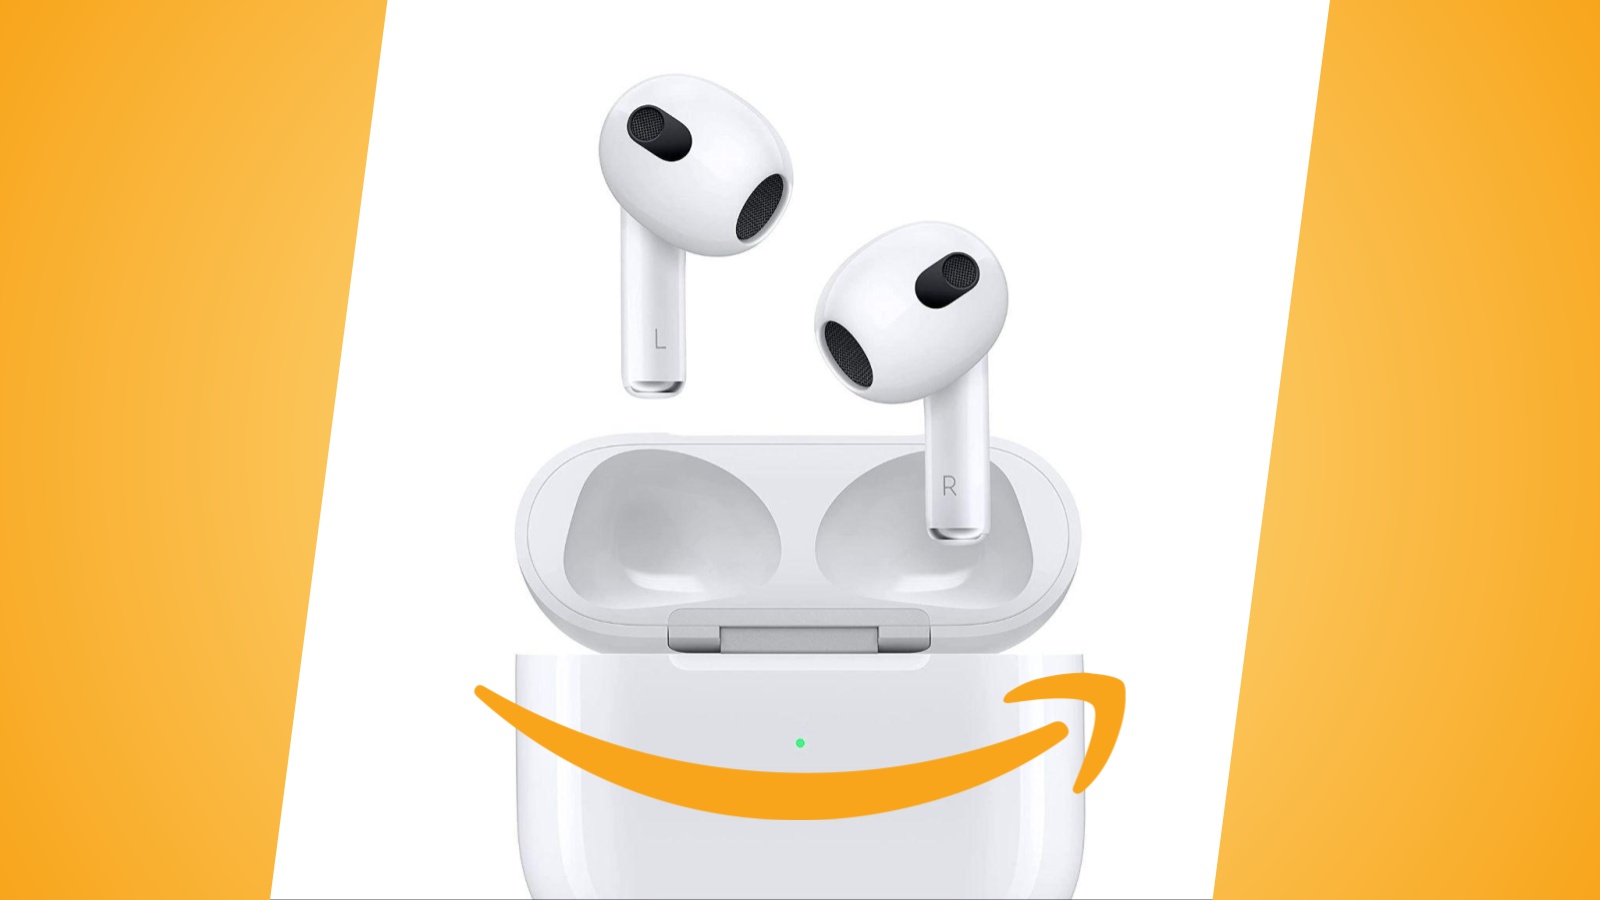 Offerte Amazon: Apple AirPods (terza generazione) in sconto, ora al prezzo minimo storico